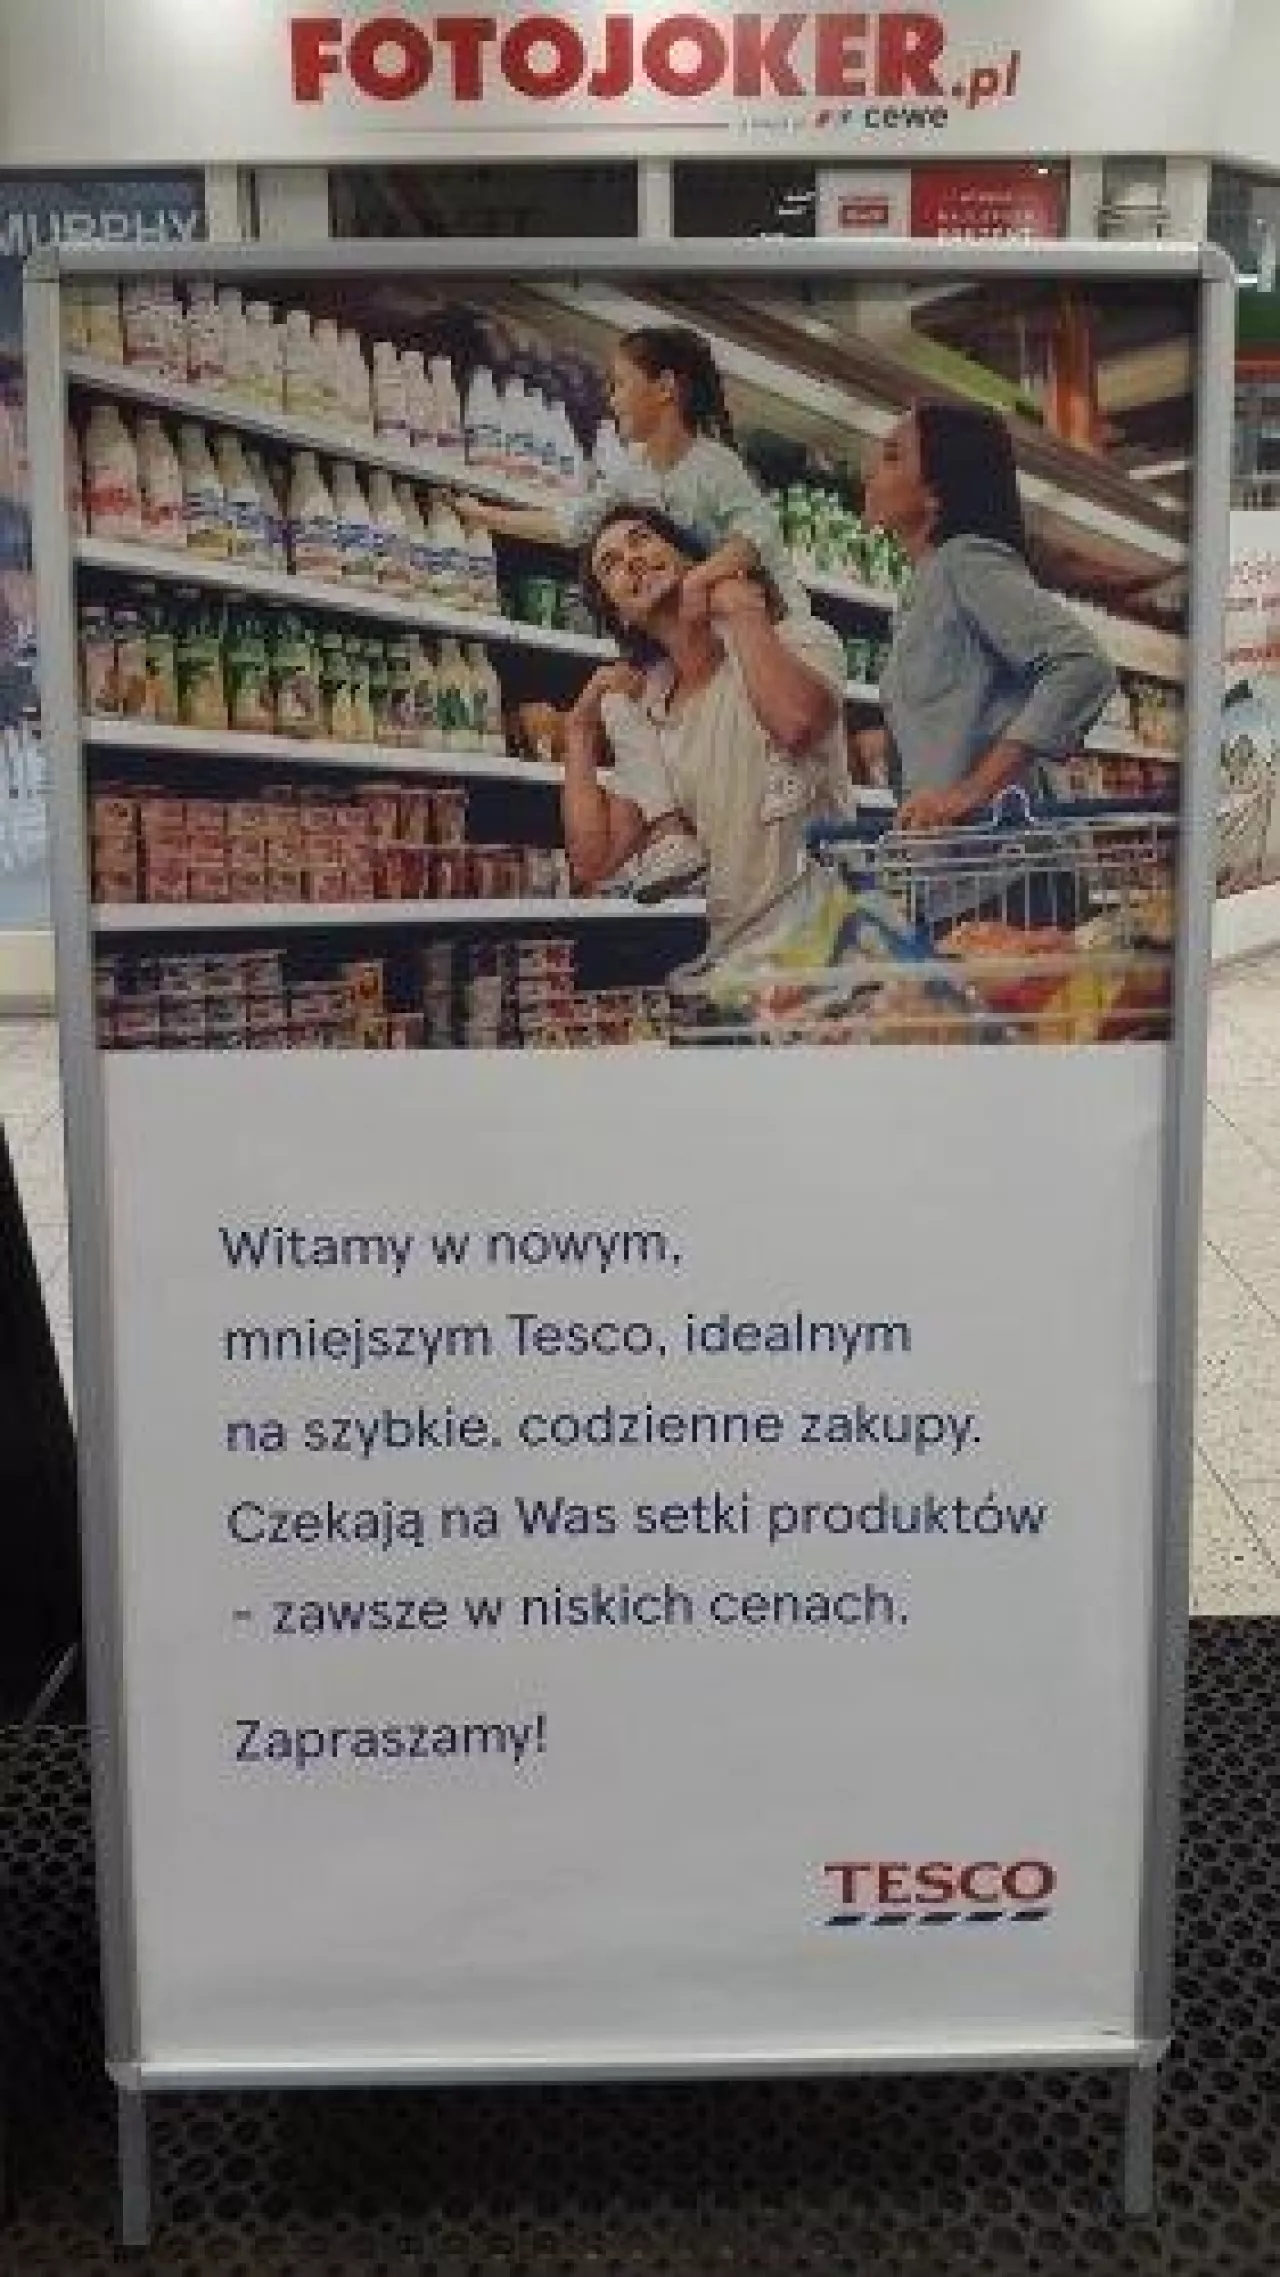 Tesco ograniczyło powierzchnię swoich największych sklepów w Polsce (fot. wiadomoscihandlowe.pl)